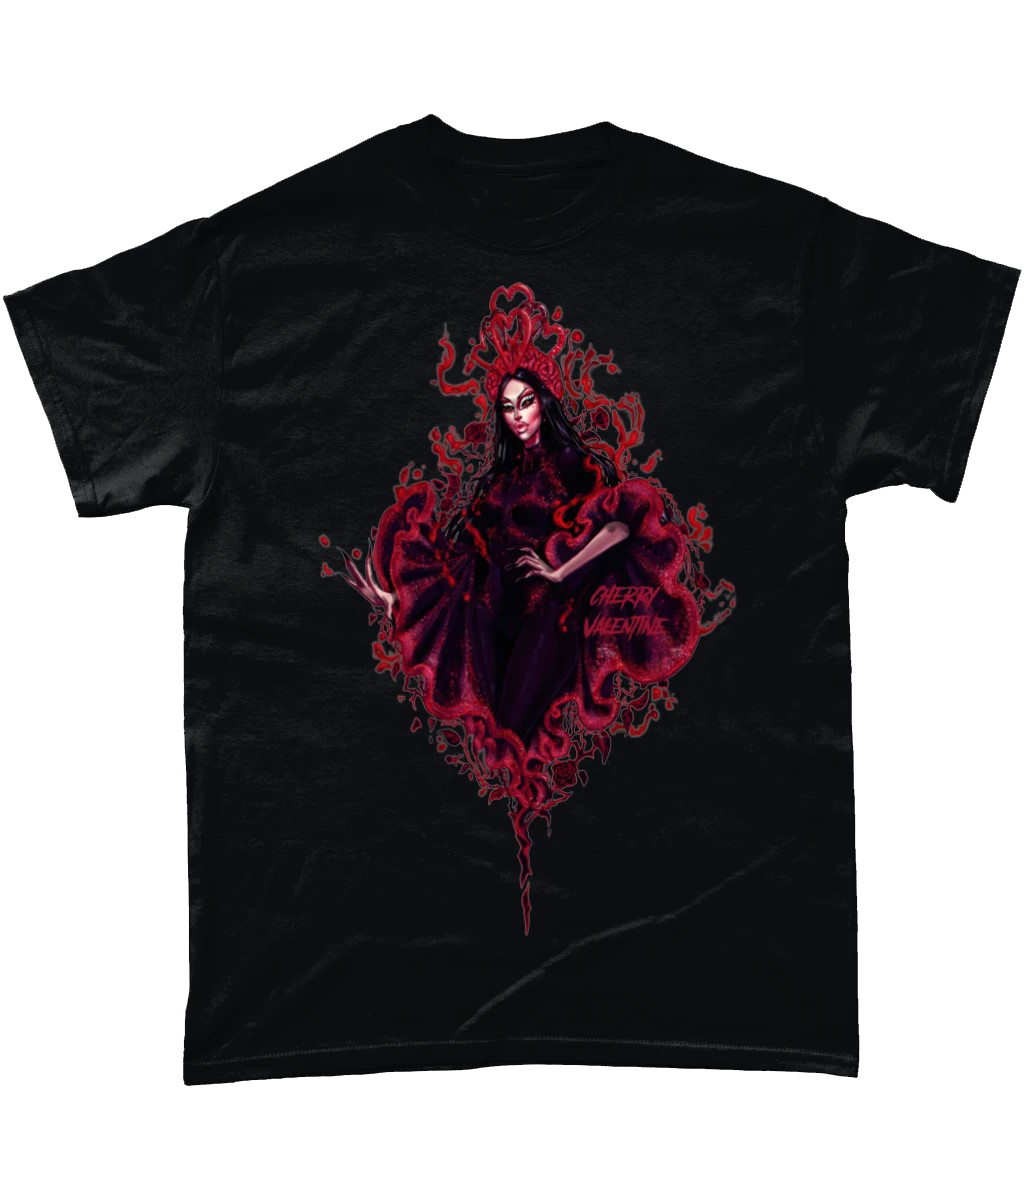 Cherry Valentine - First Love T-Shirt